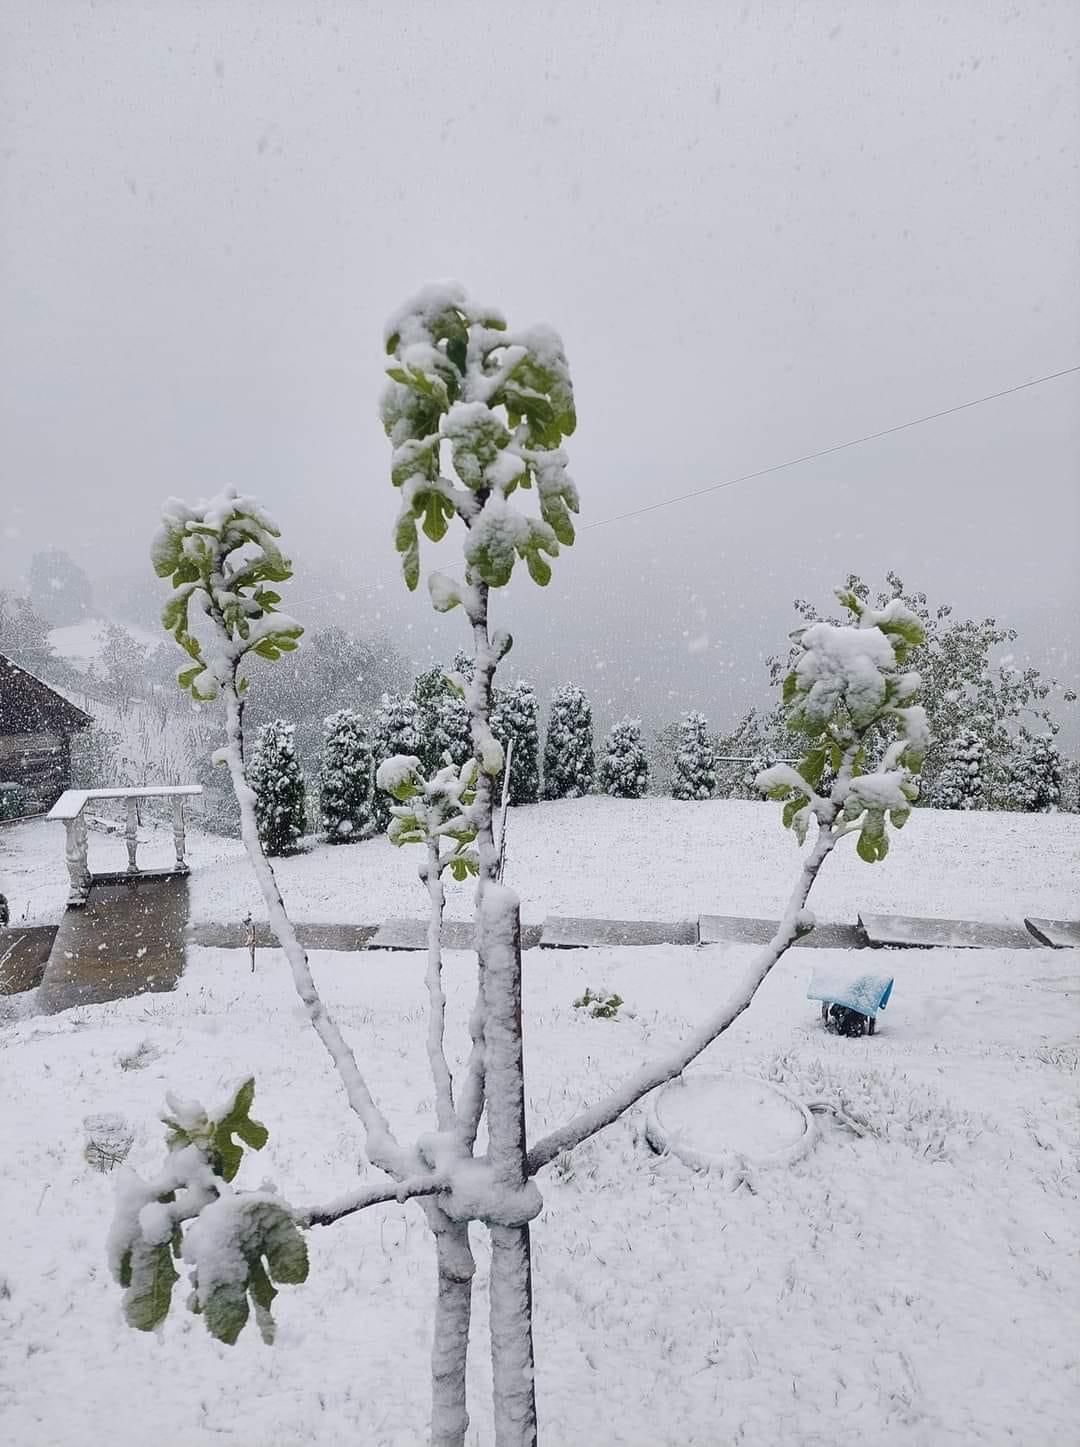 Dje ishte 30 gradë celsius, sot bie borë në Kroaci dhe Slloveni